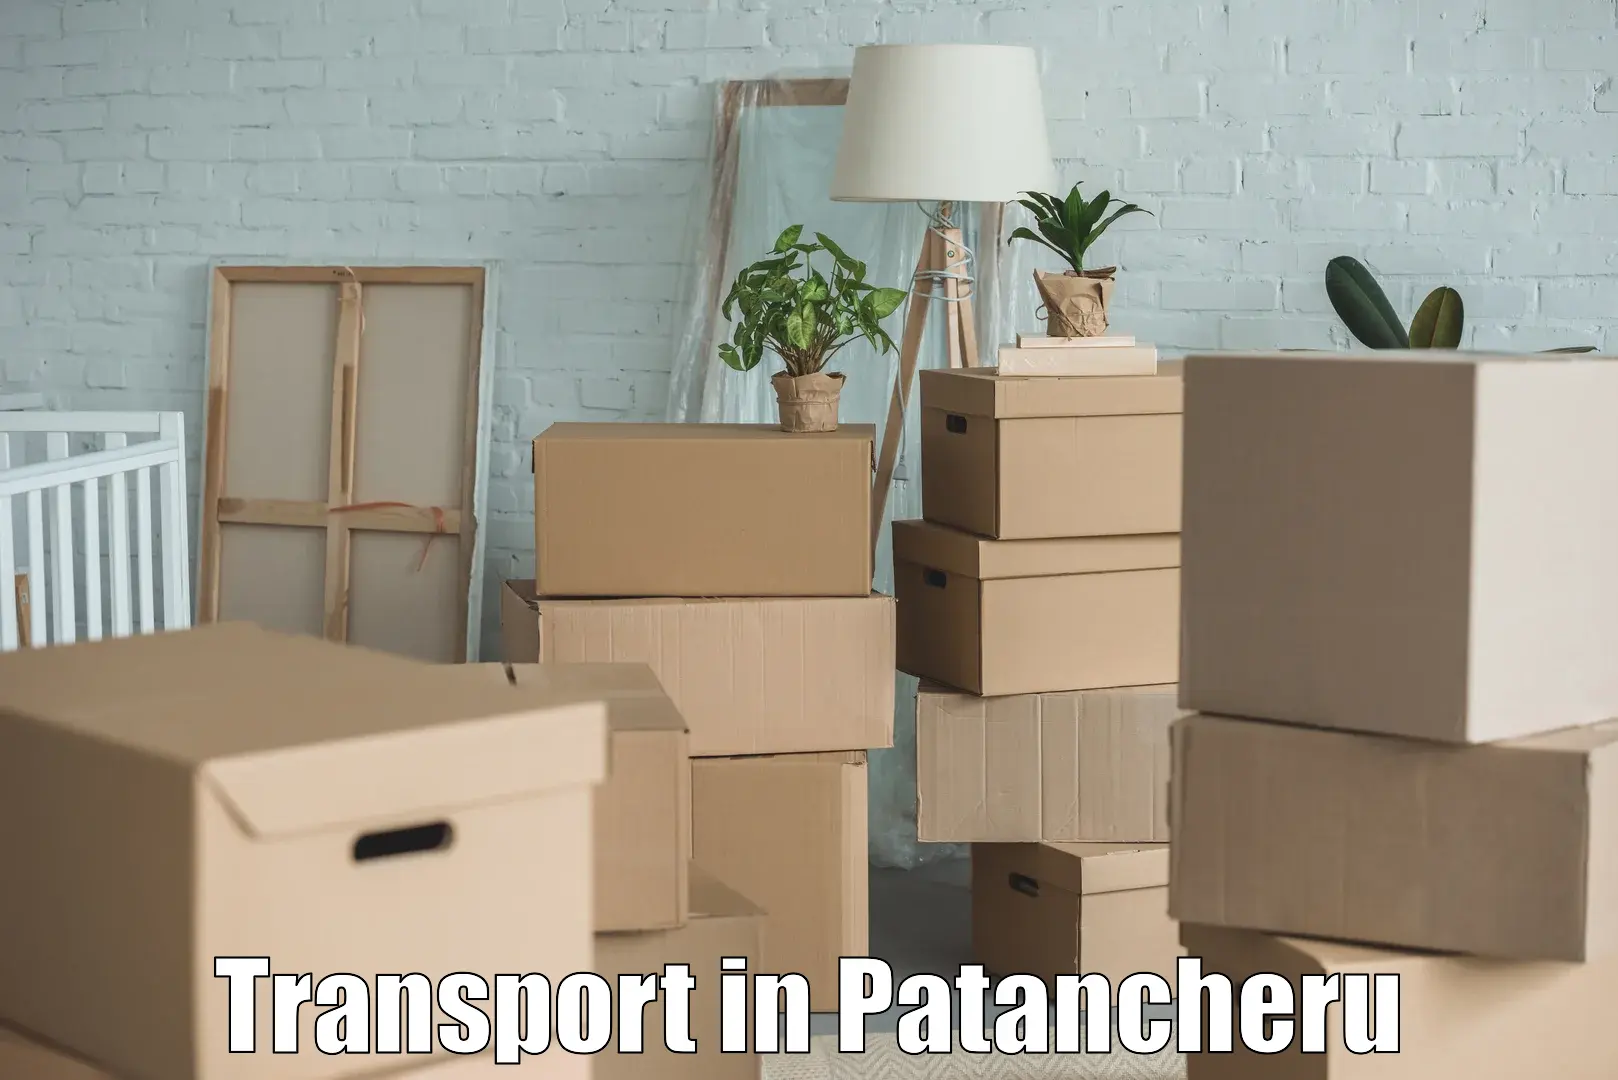 Online transport booking in Patancheru